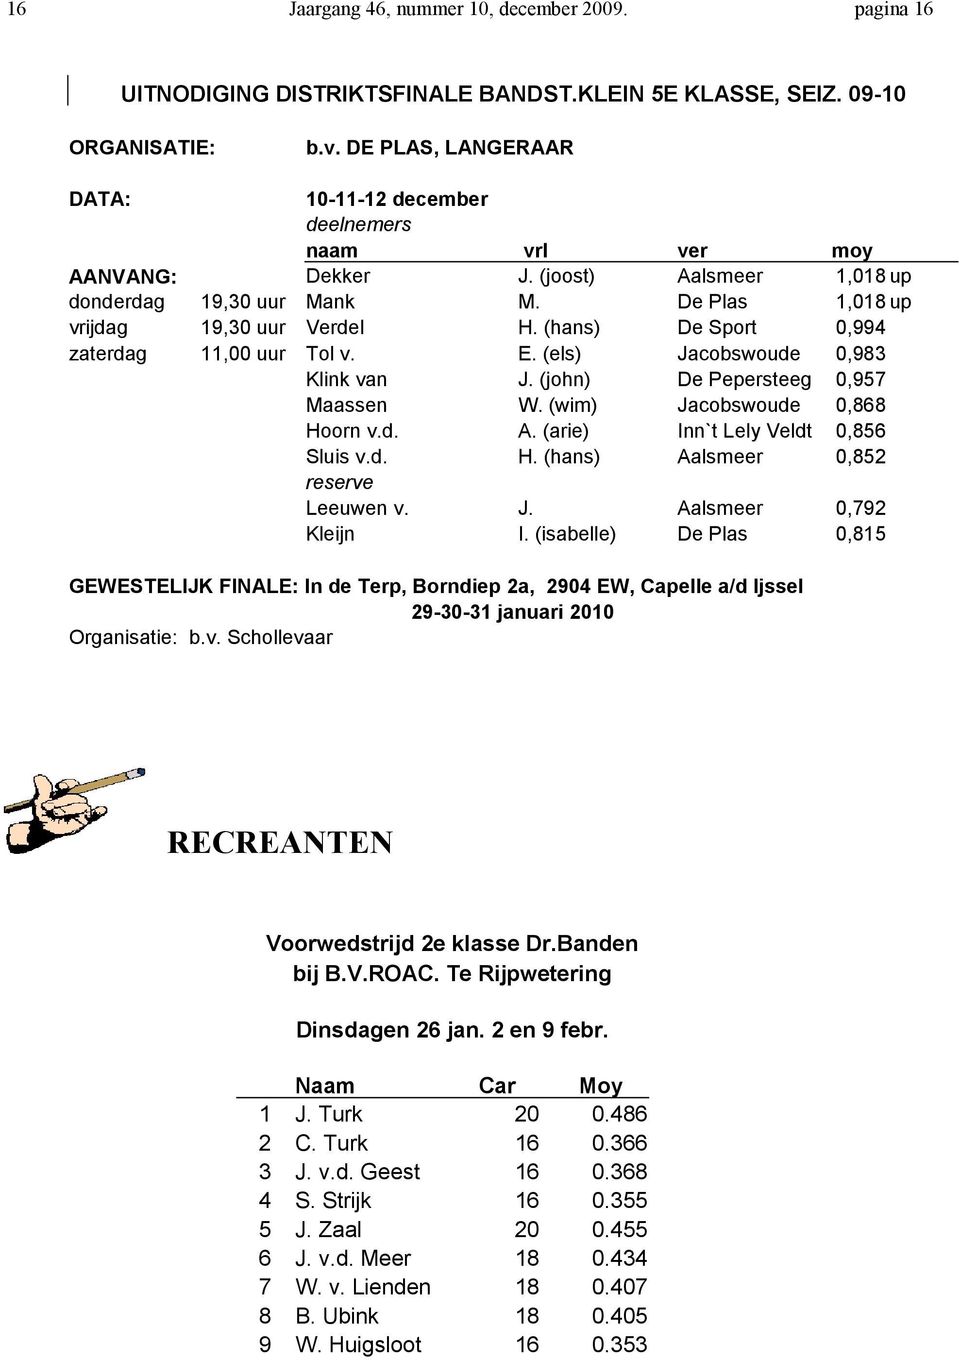 (hans) De Sport 0,994 zaterdag 11,00 uur Tol v. E. (els) Jacobswoude 0,983 Klink van J. (john) De Pepersteeg 0,957 Maassen W. (wim) Jacobswoude 0,868 Hoorn v.d. A.